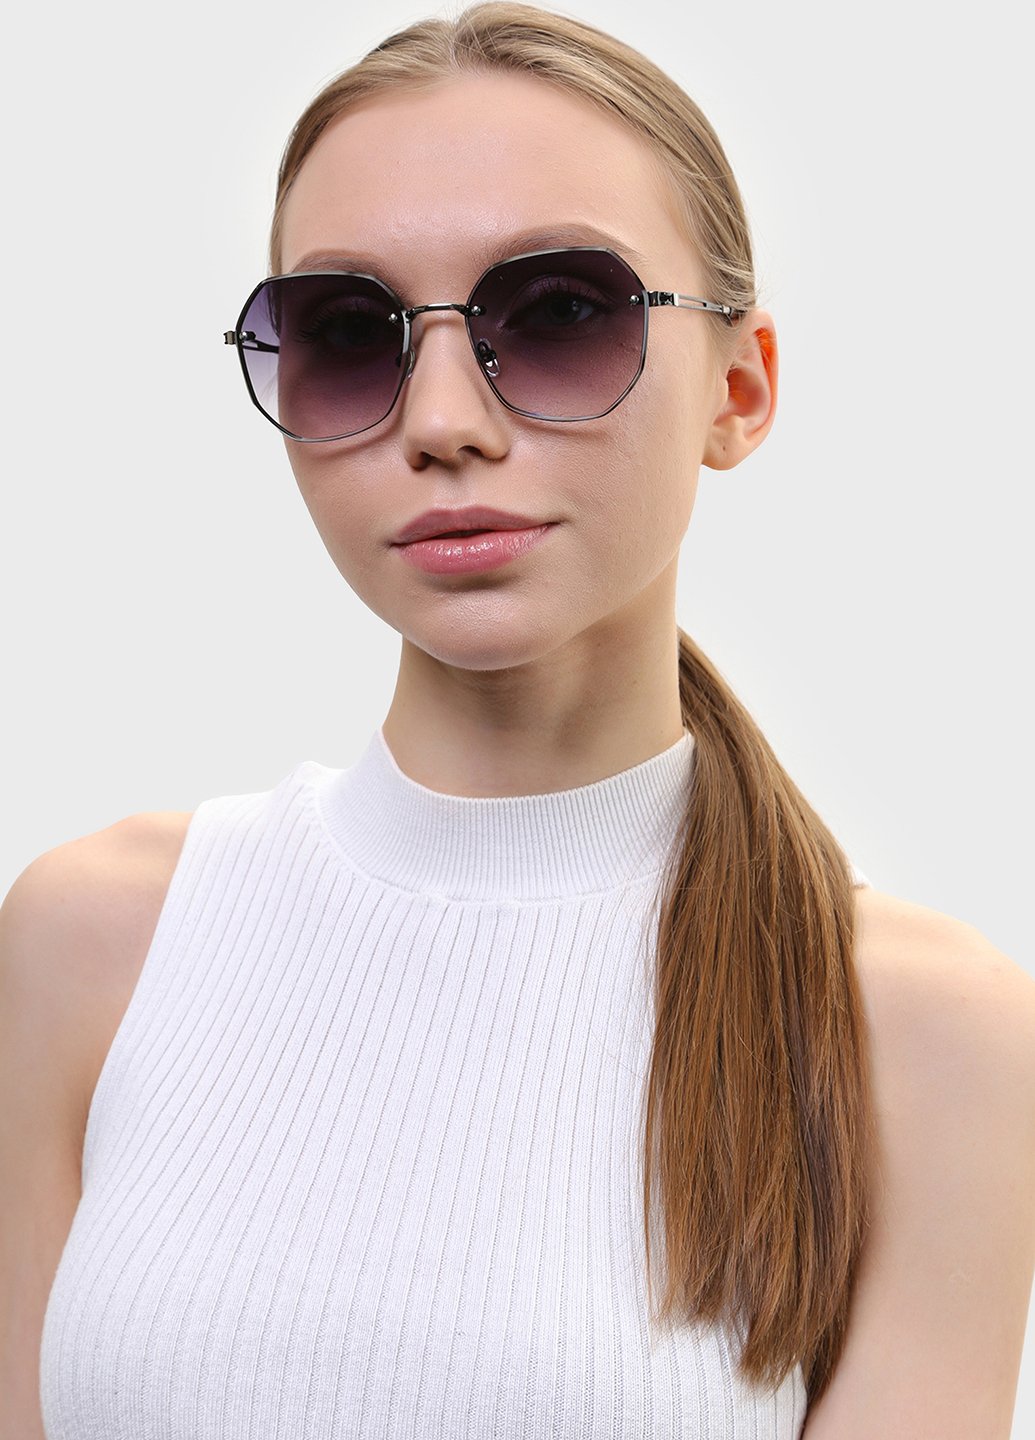 Купить Женские солнцезащитные очки Merlini с поляризацией S31817 117045 - Черный в интернет-магазине